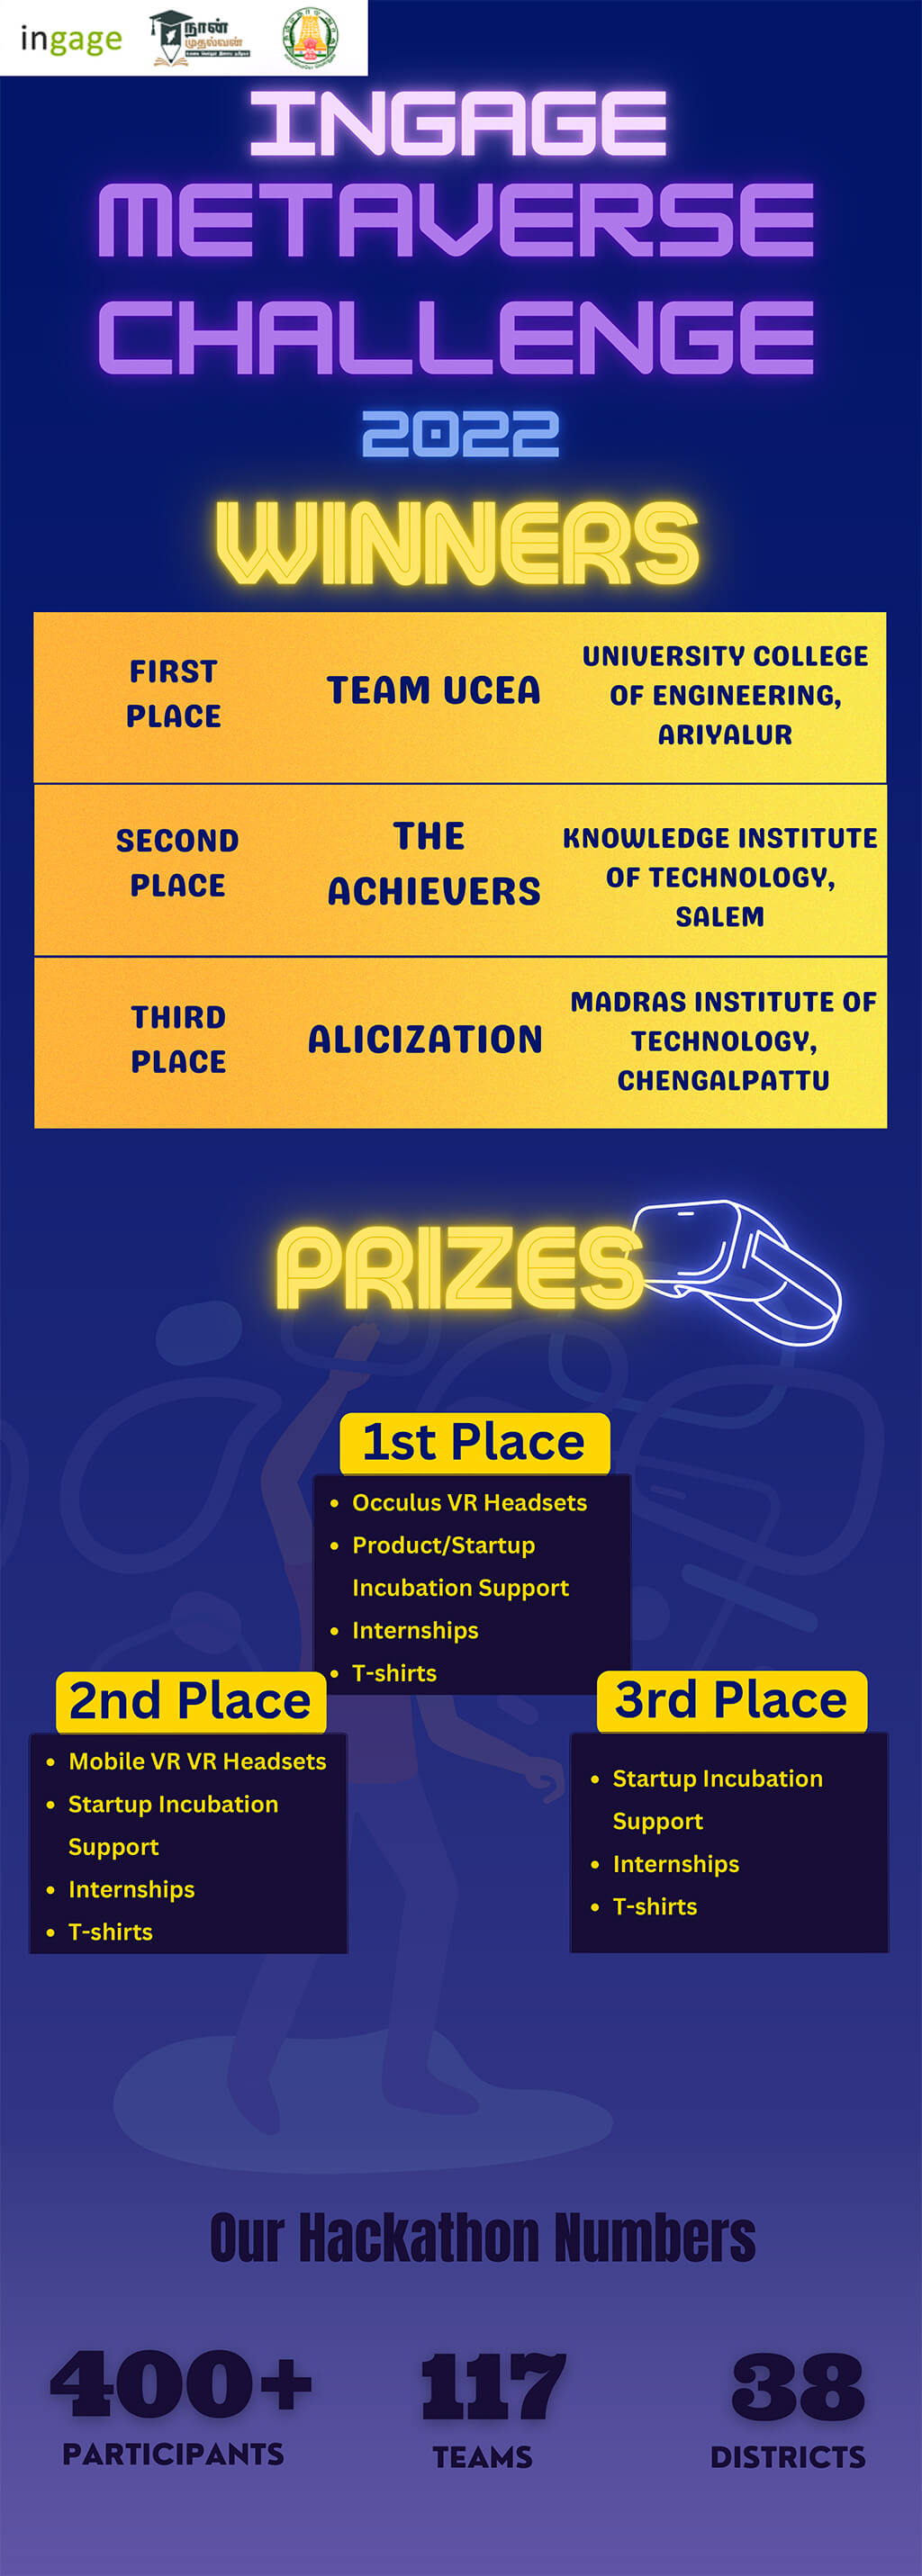 Metaverse Hackathon Winners Announced!